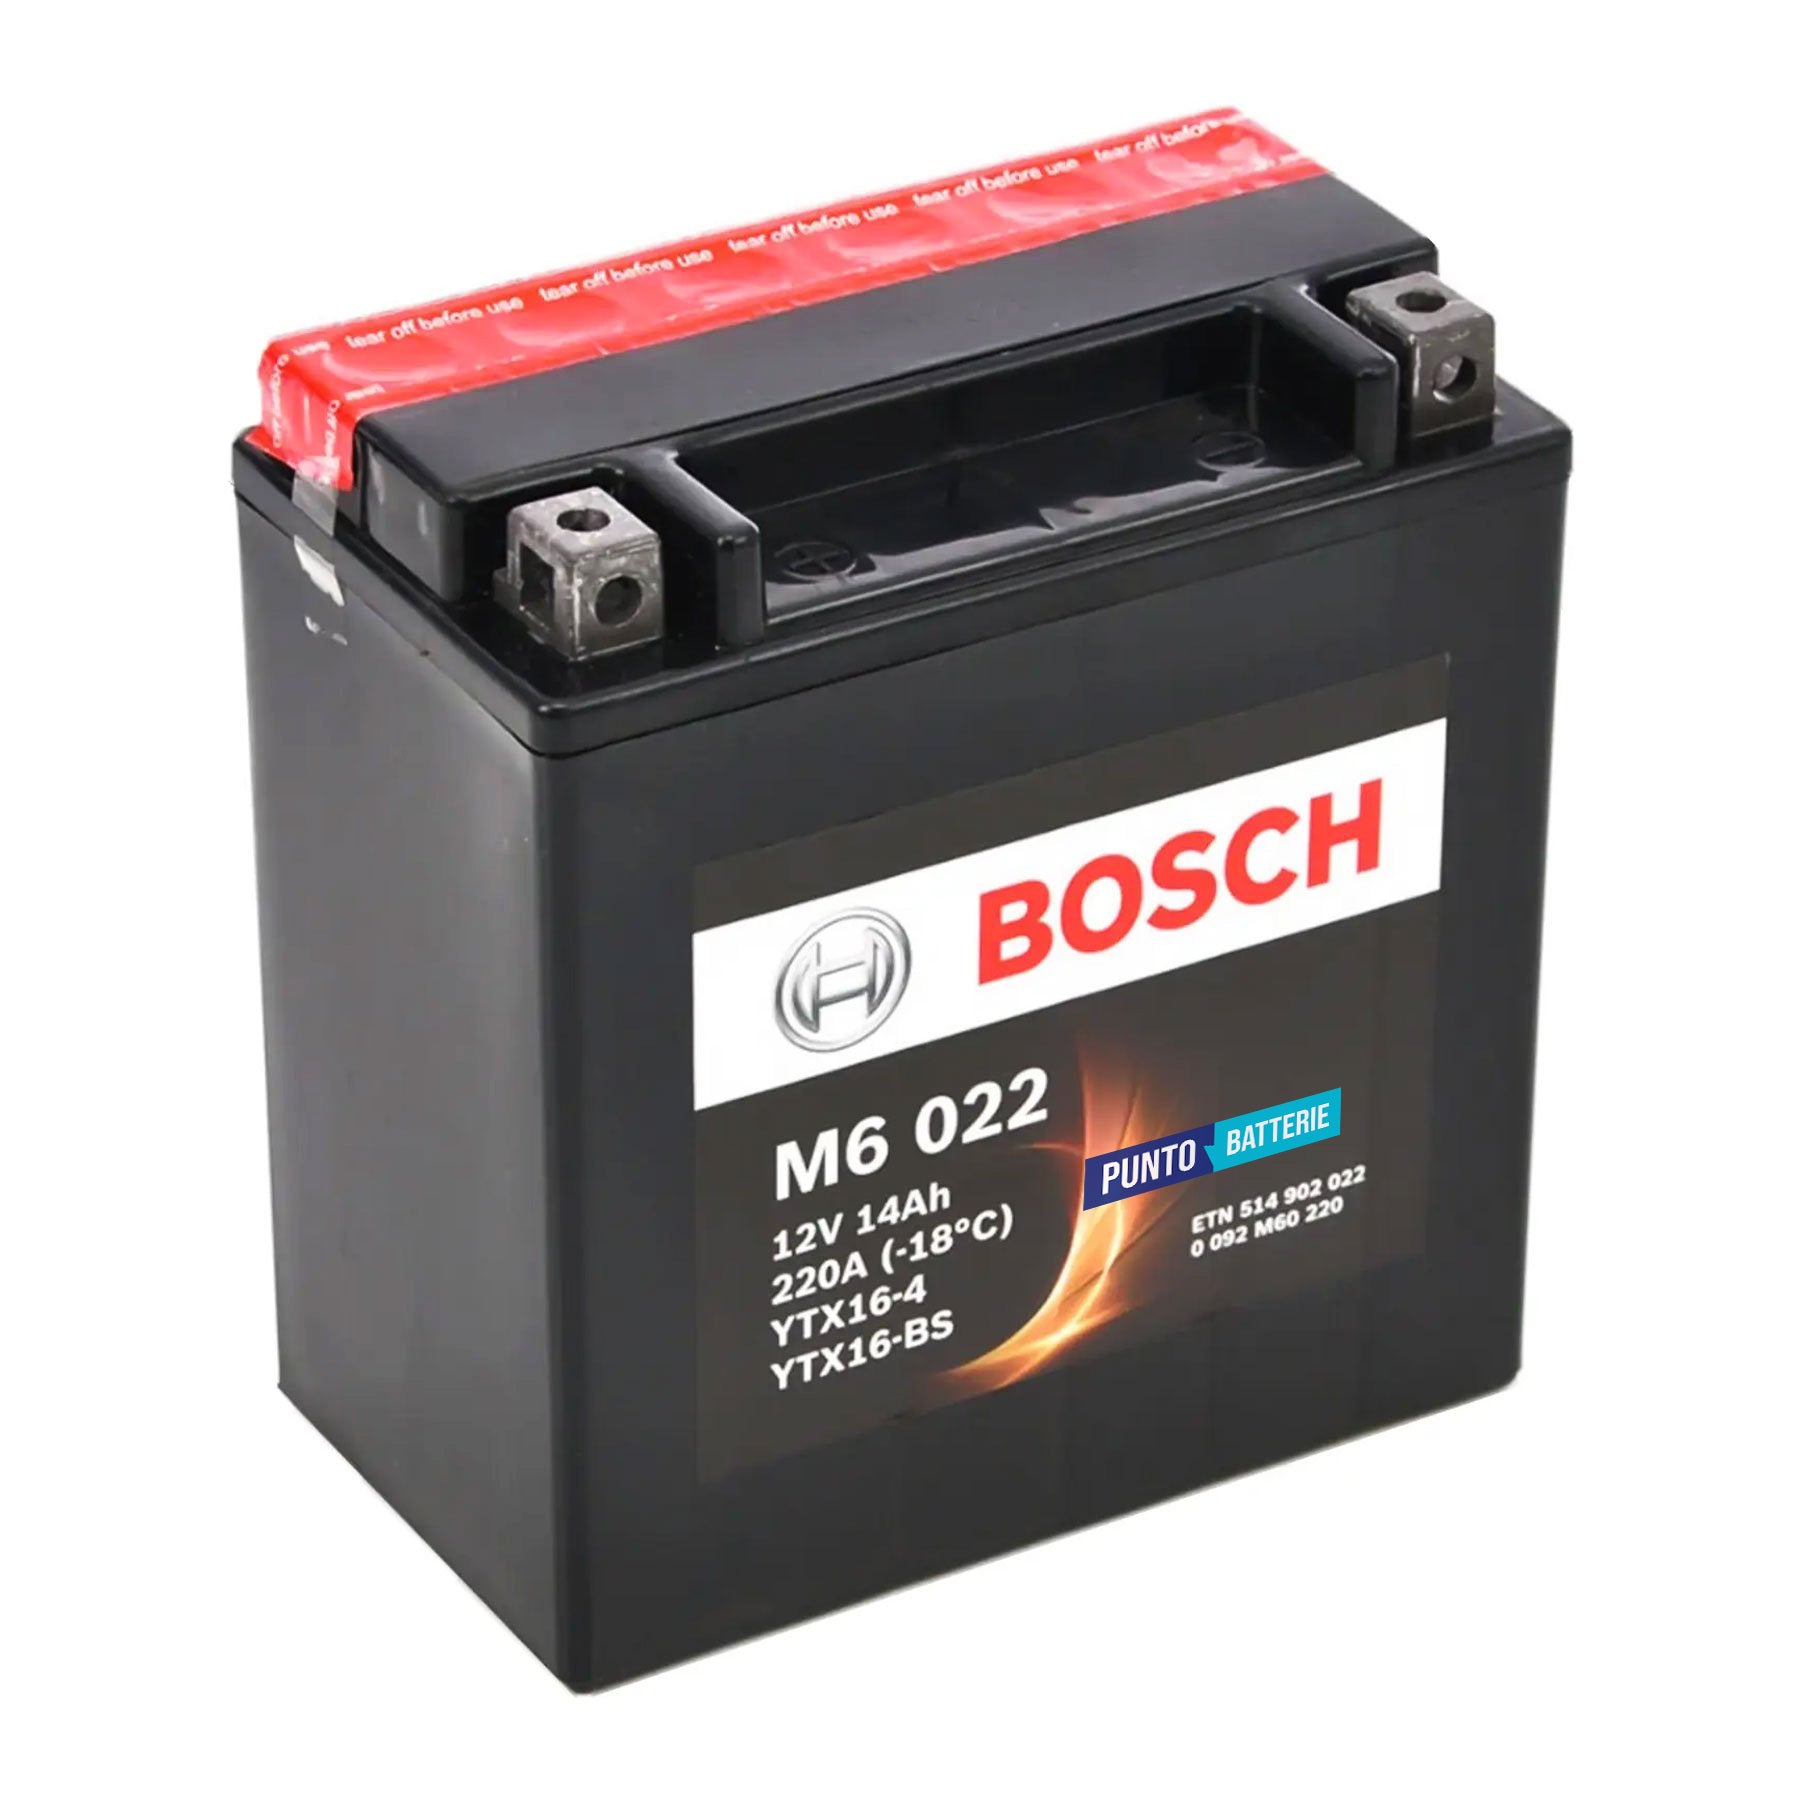 Batteria originale Bosch M6 M6022, dimensioni 150 x 87 x 161, polo positivo a sinistra, 12 volt, 14 amperora, 220 ampere. Batteria per moto, scooter e powersport.